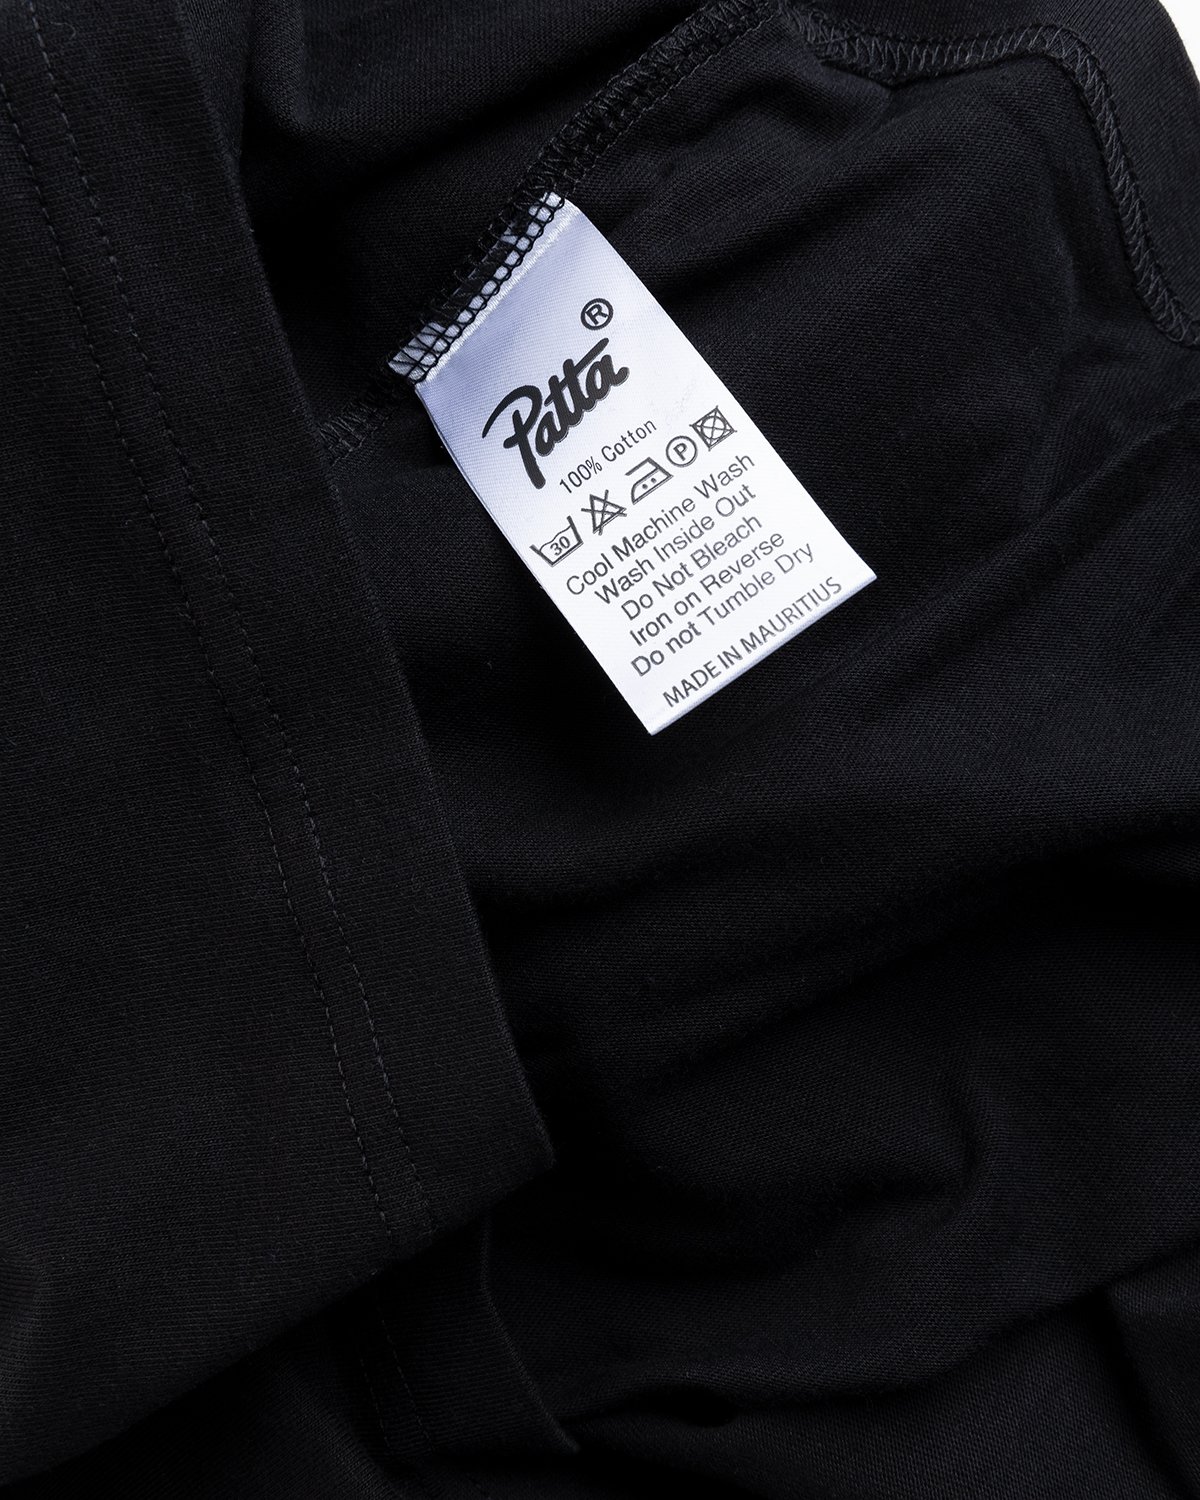 Patta - Basic Longsleeve Black - Clothing - Black - Image 5